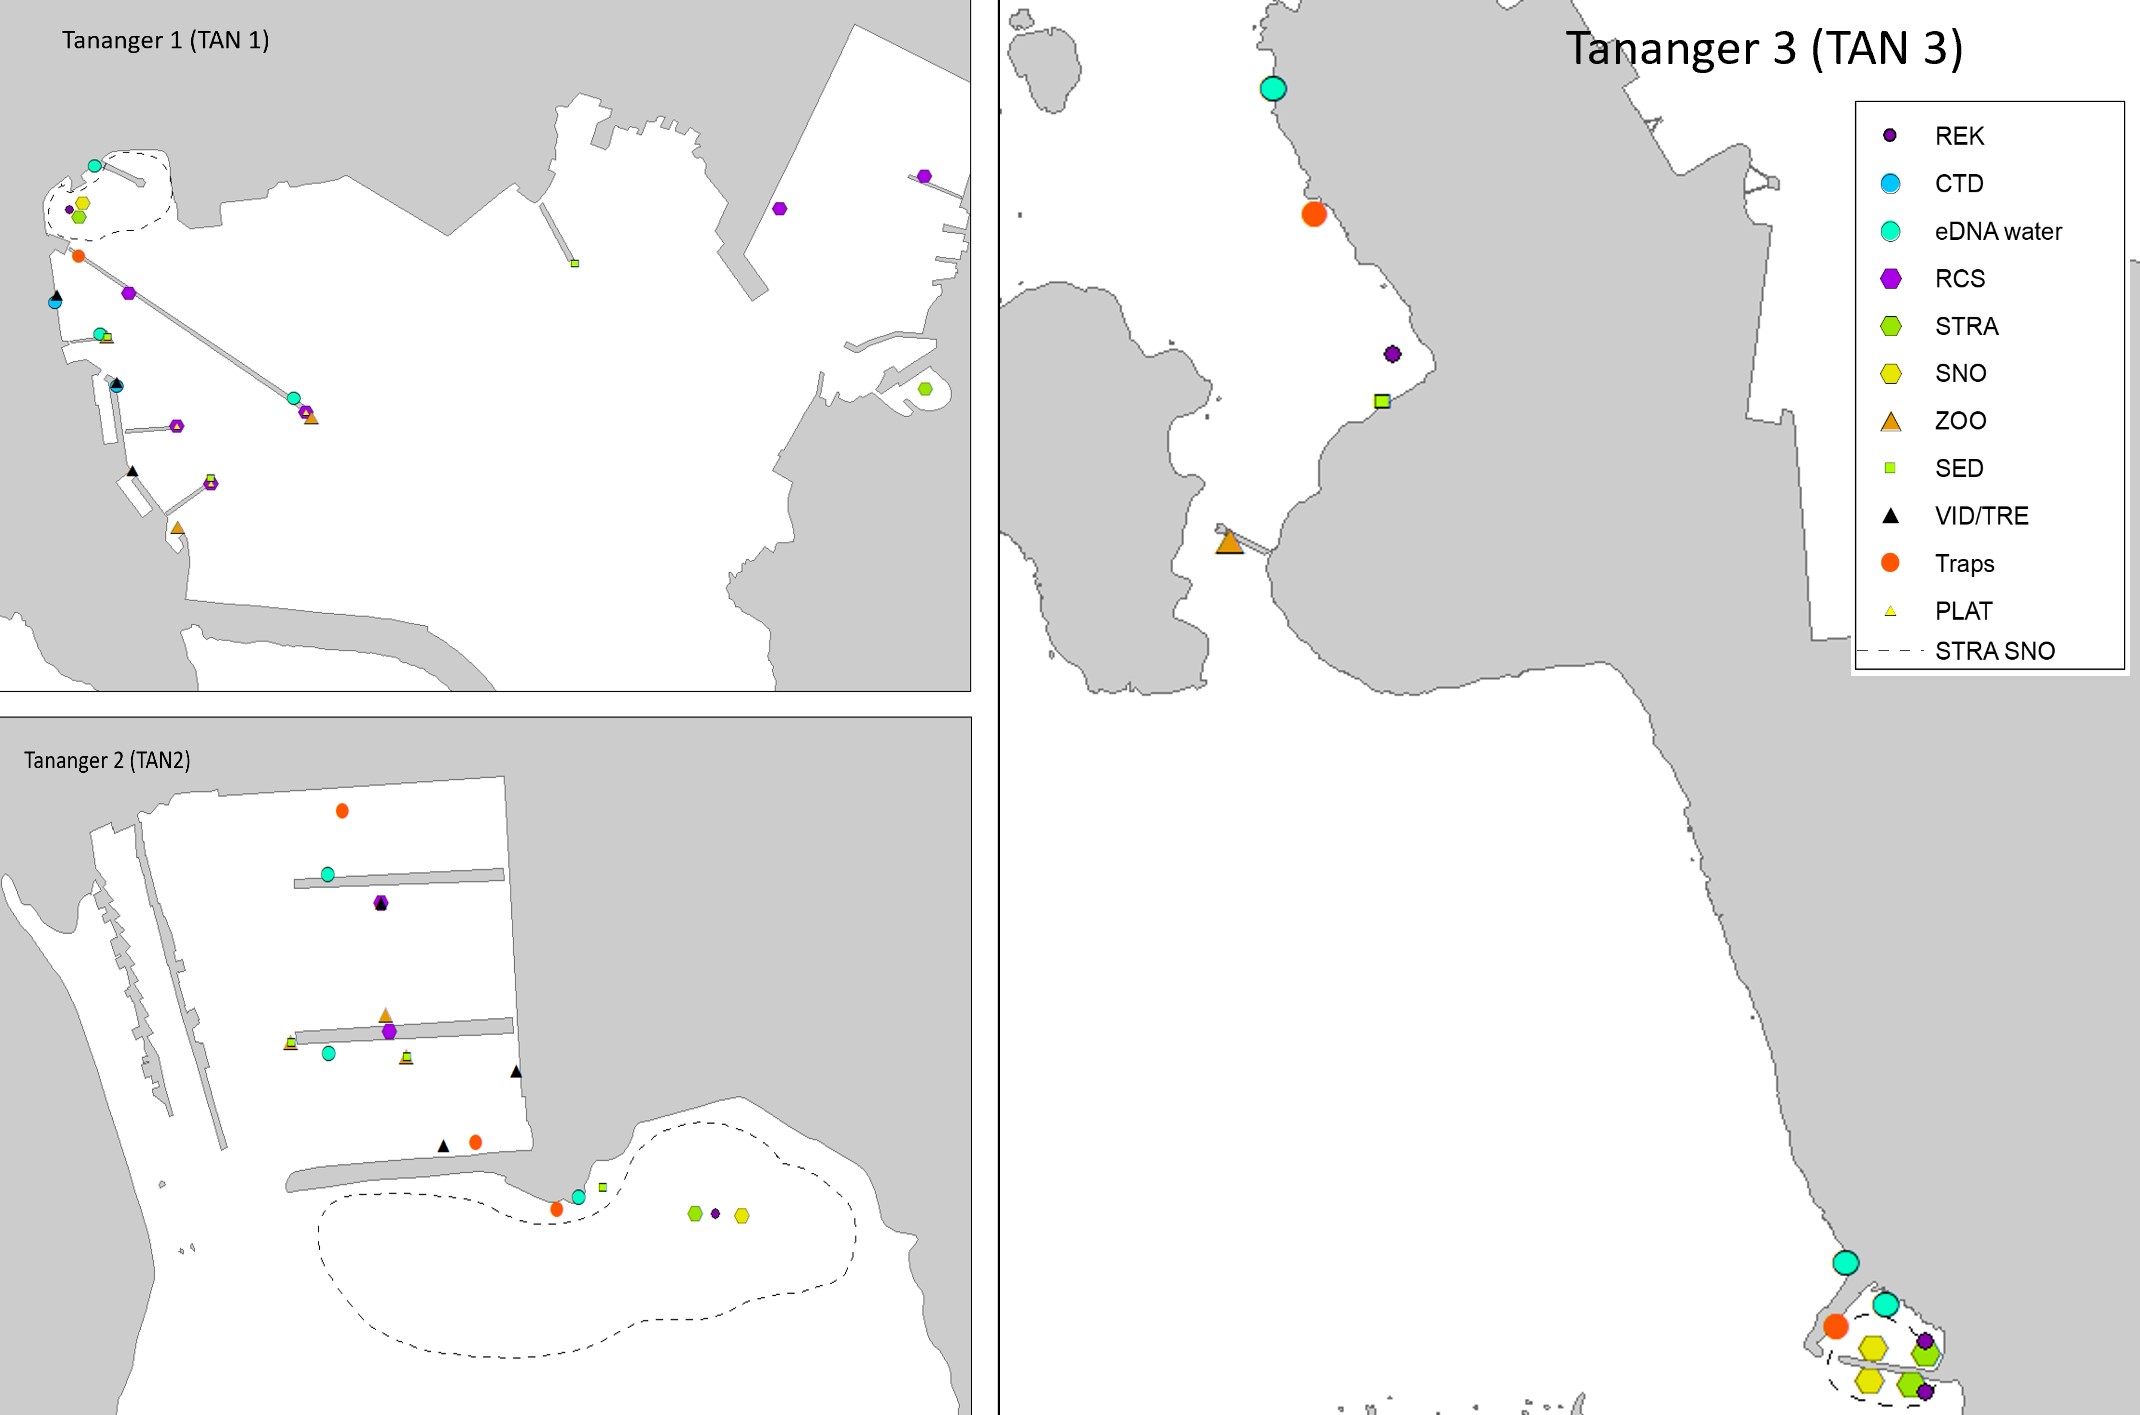 Dette er et kart med oversikt over stasjoner som er undersøkt med ulike metoder i Tananger havn 